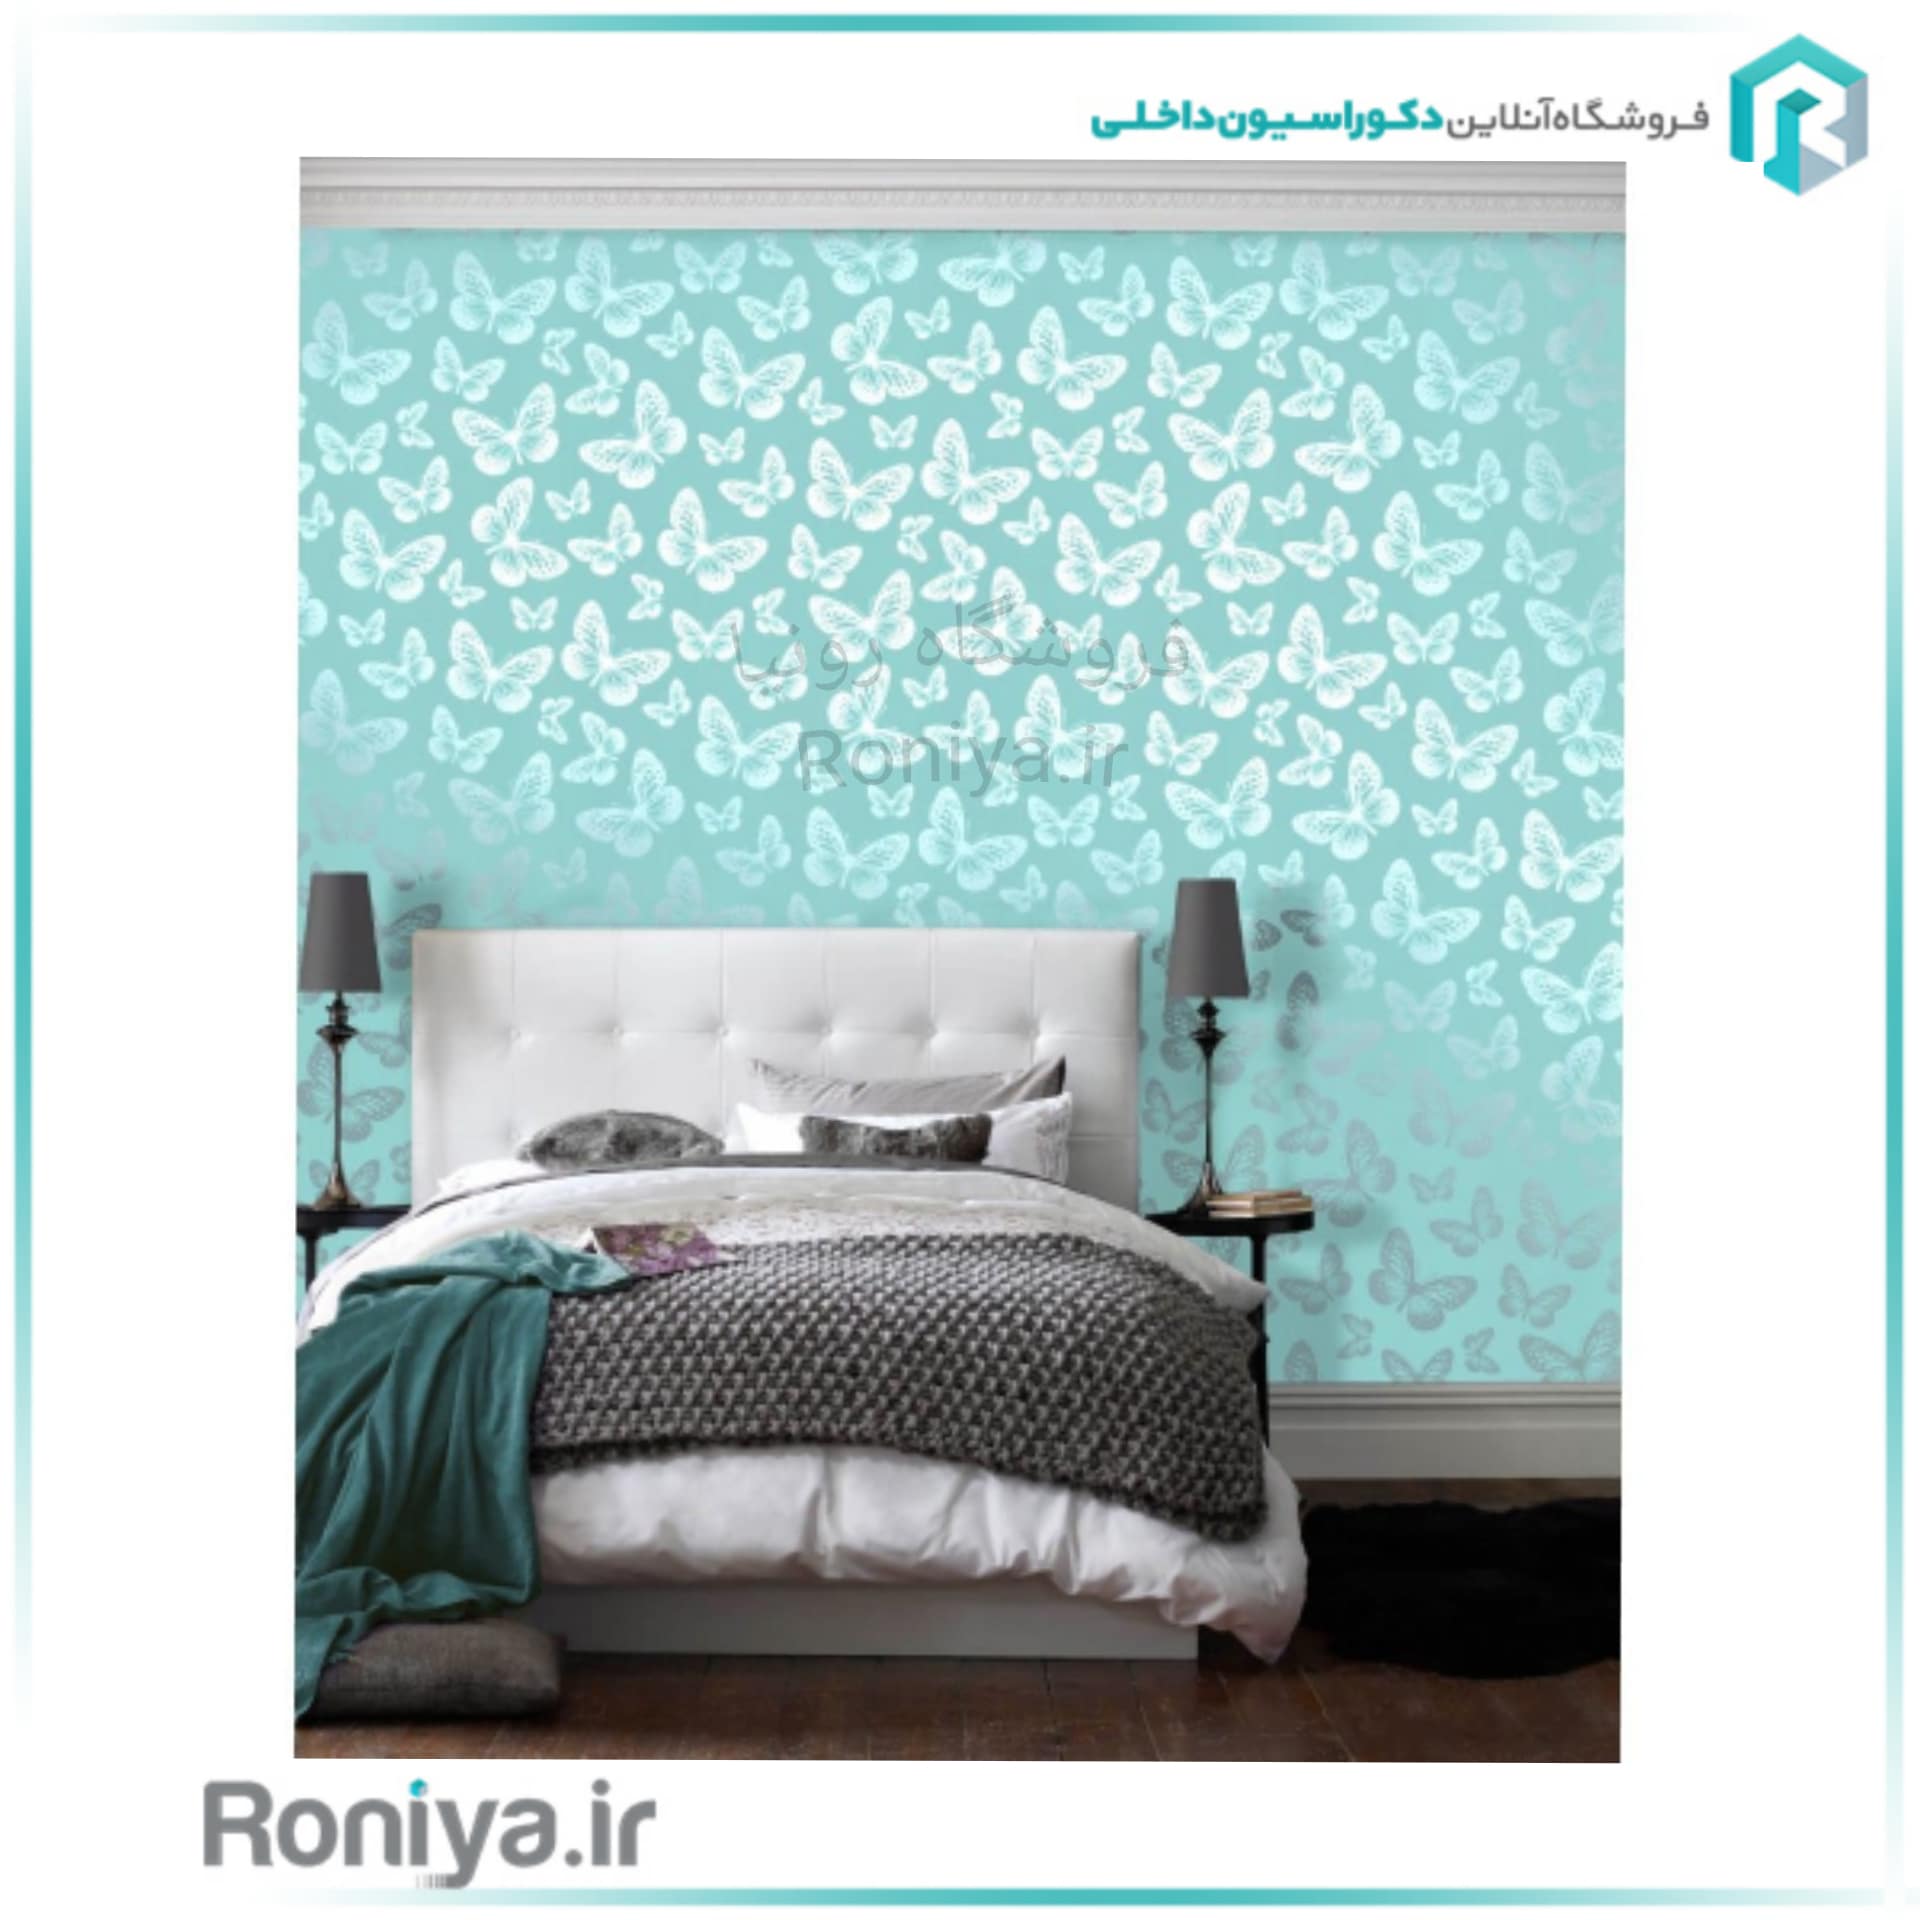  انتخاب رنگ و طرح کاغذ دیواری اتاق خواب بر اساس سنین